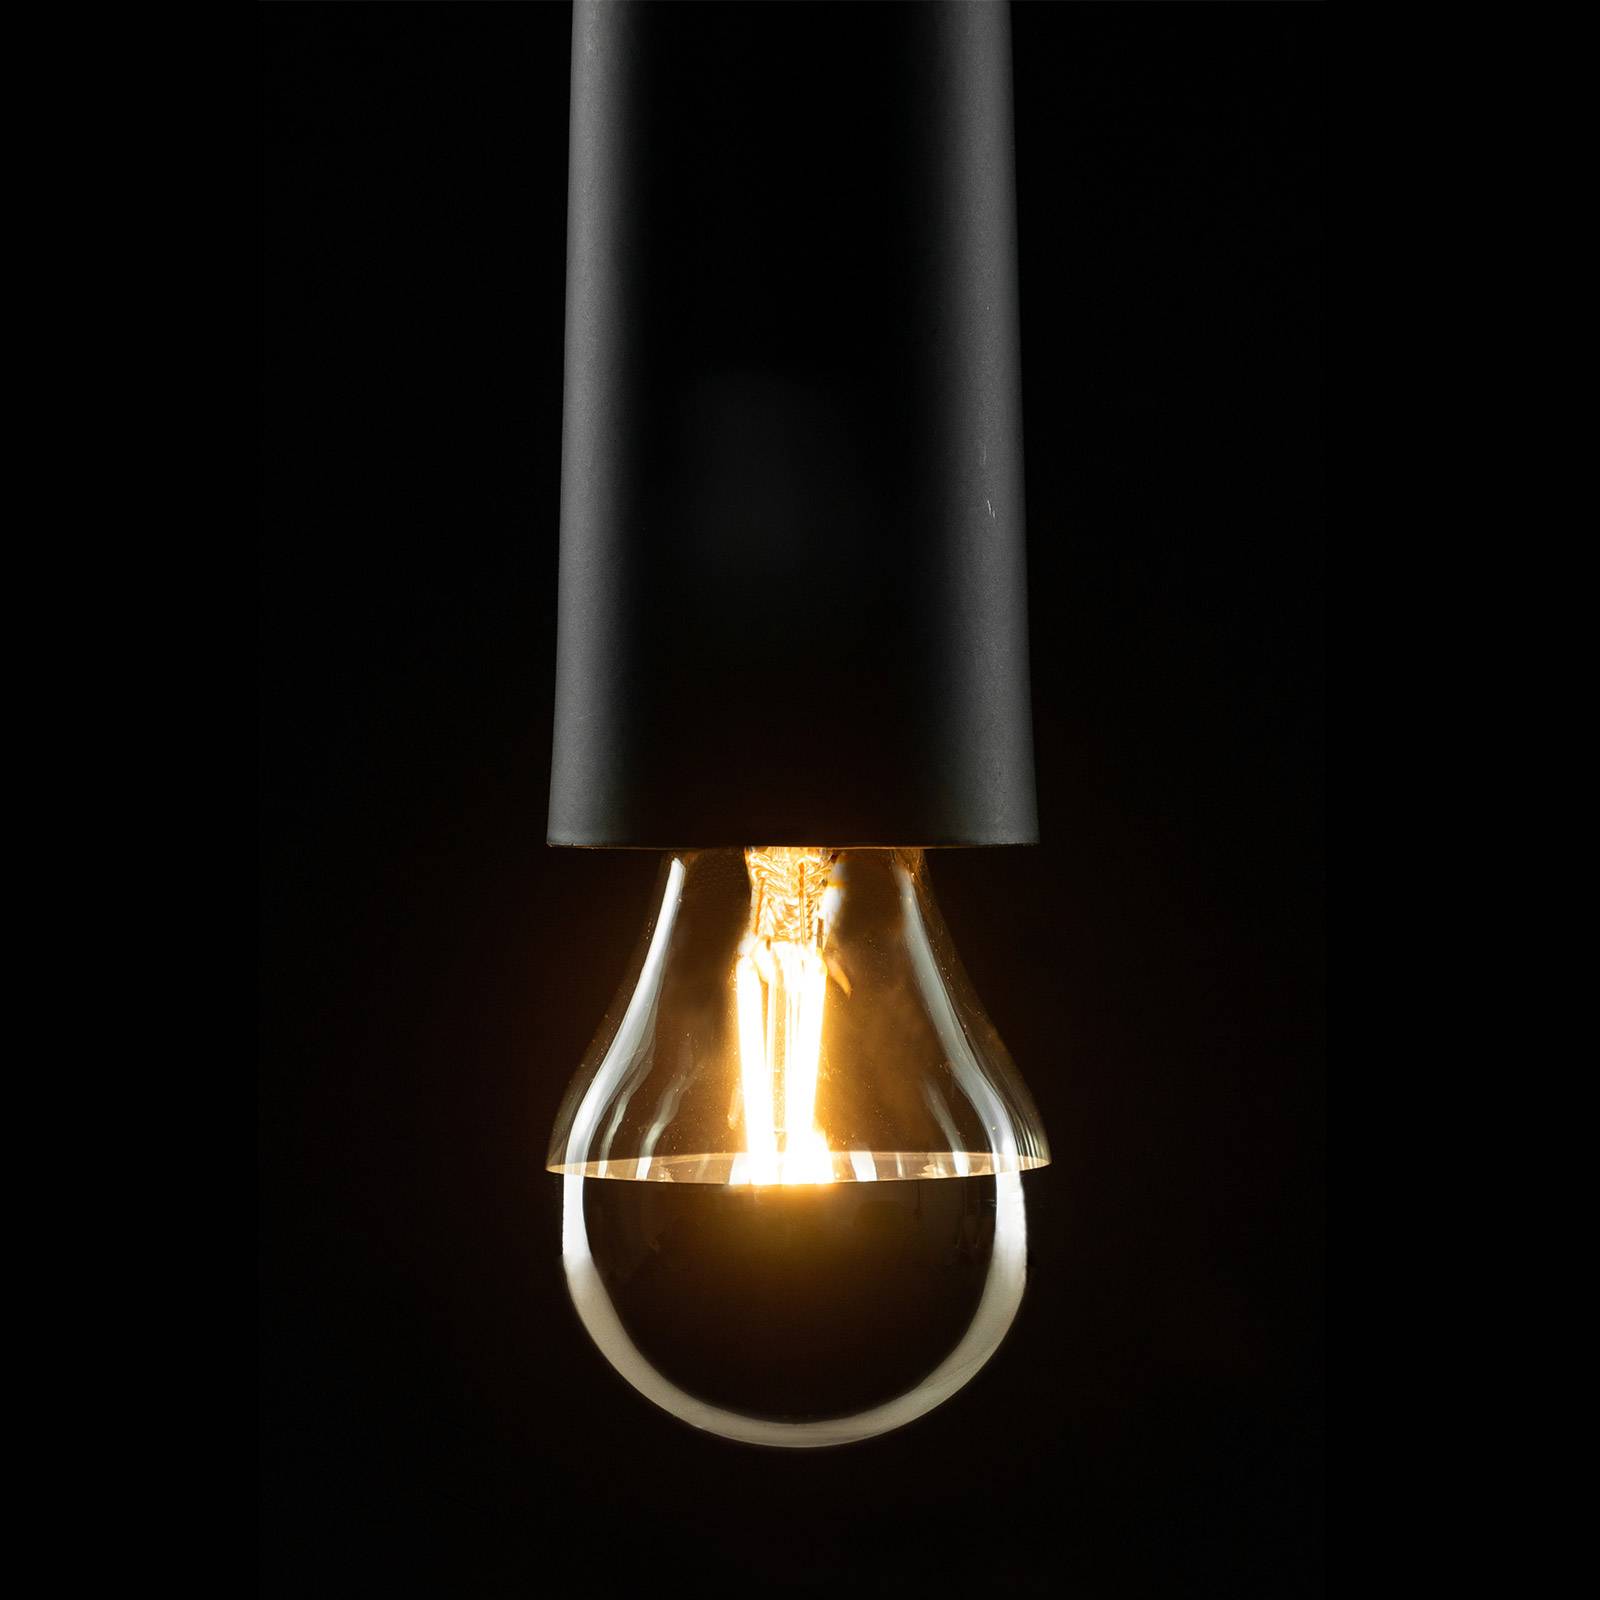 Image of Lampe LED E14 3W à calotte miroitante blc chaud 4260150053707